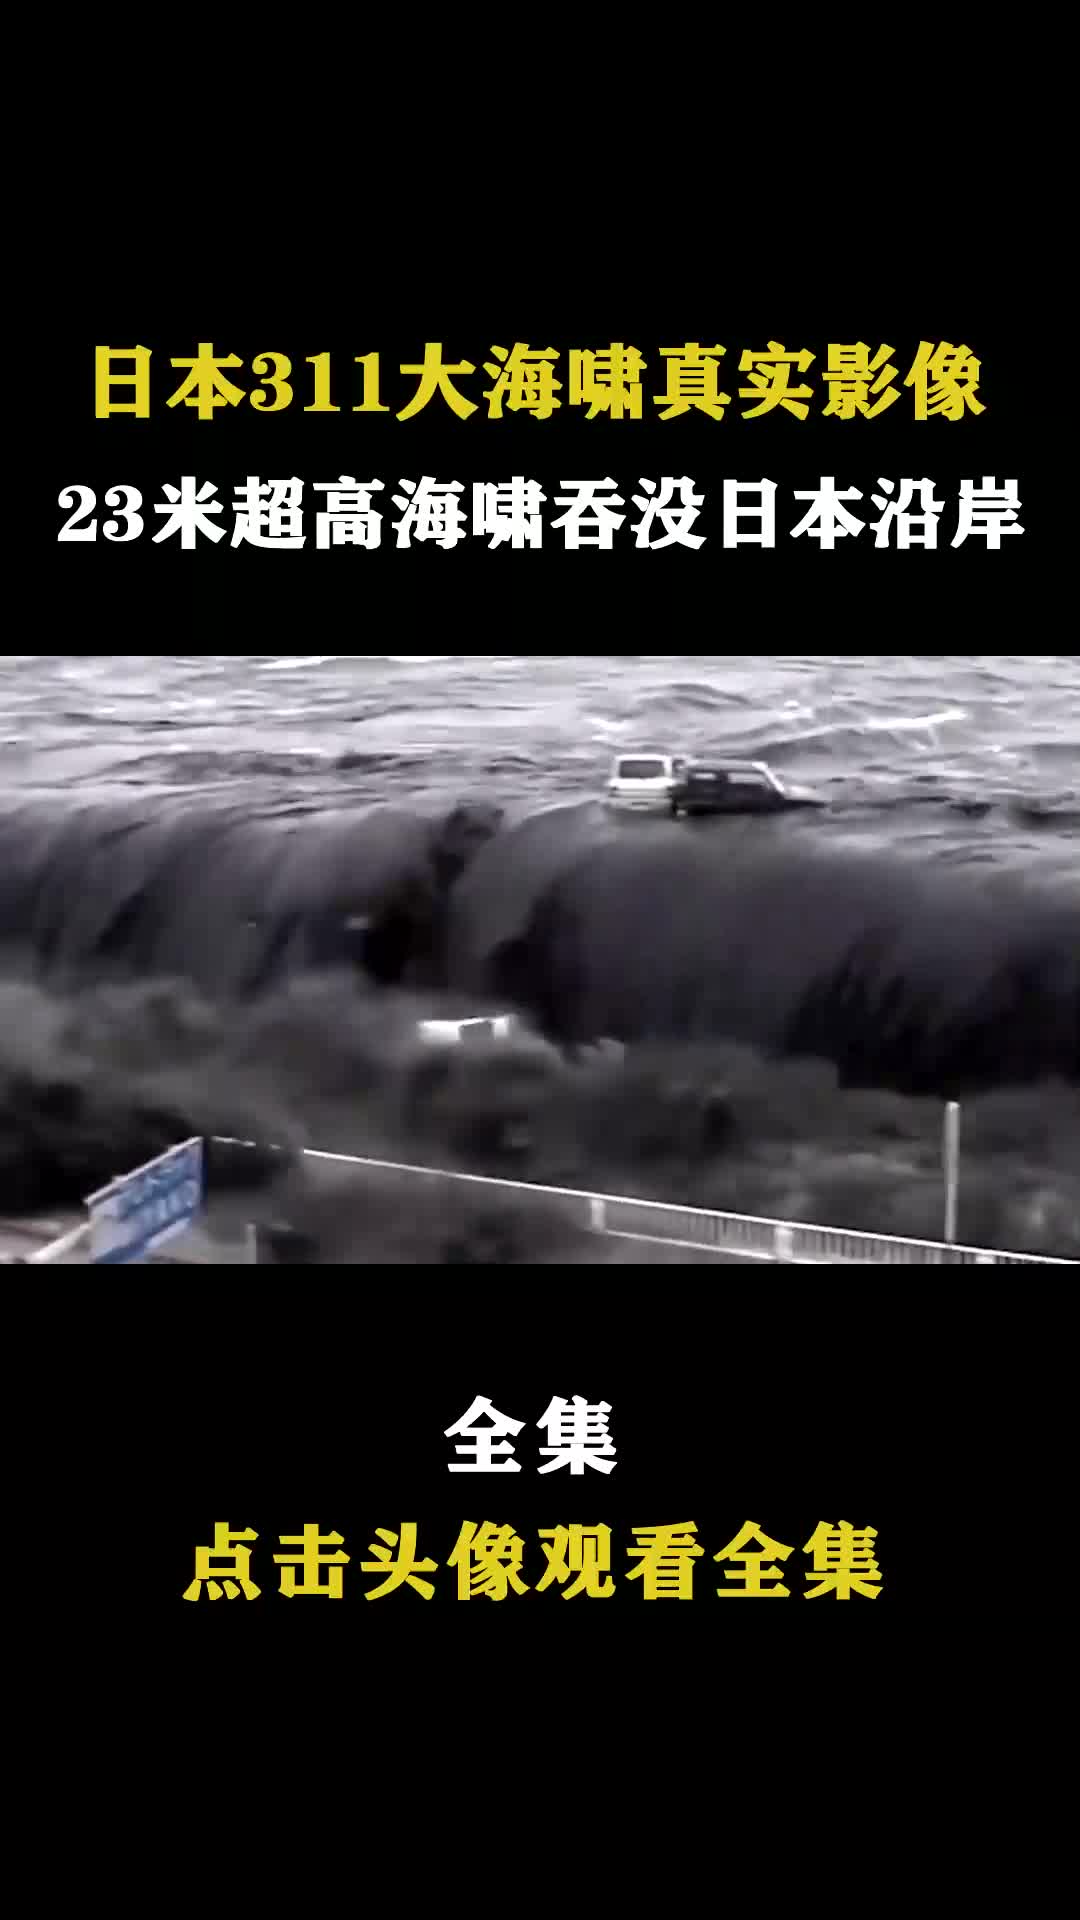 日本311大海啸真实影像,23米巨型海啸吞没日本沿岸,数百万人无家可归